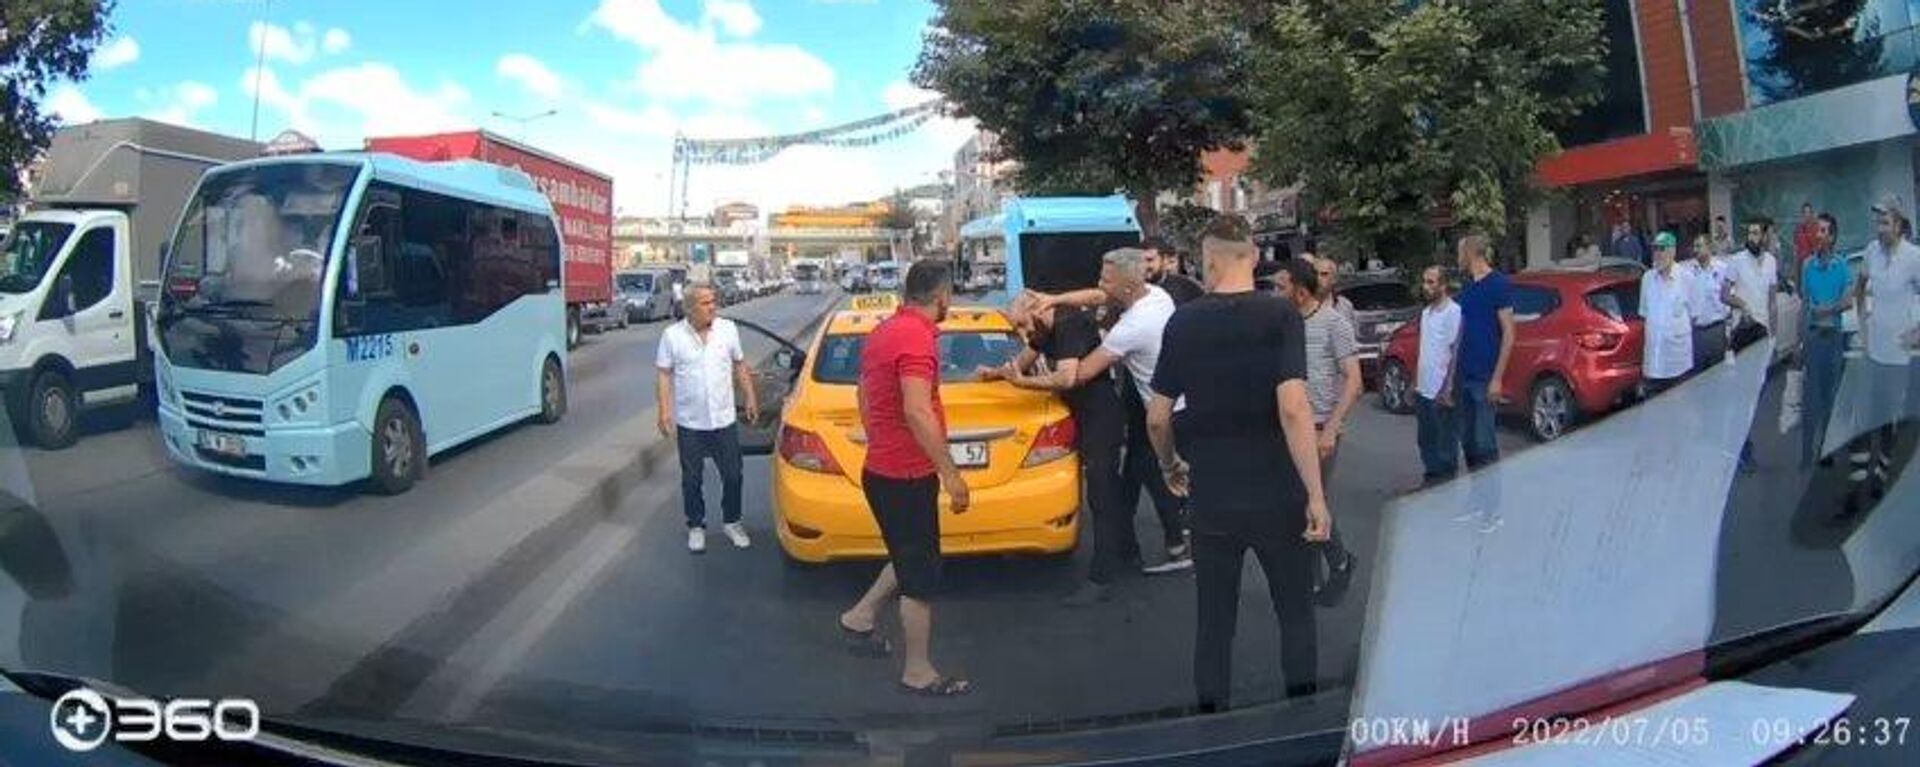 Pendik’te taksideki kadına saldıran şahsa meydan dayağı - Sputnik Türkiye, 1920, 06.07.2022